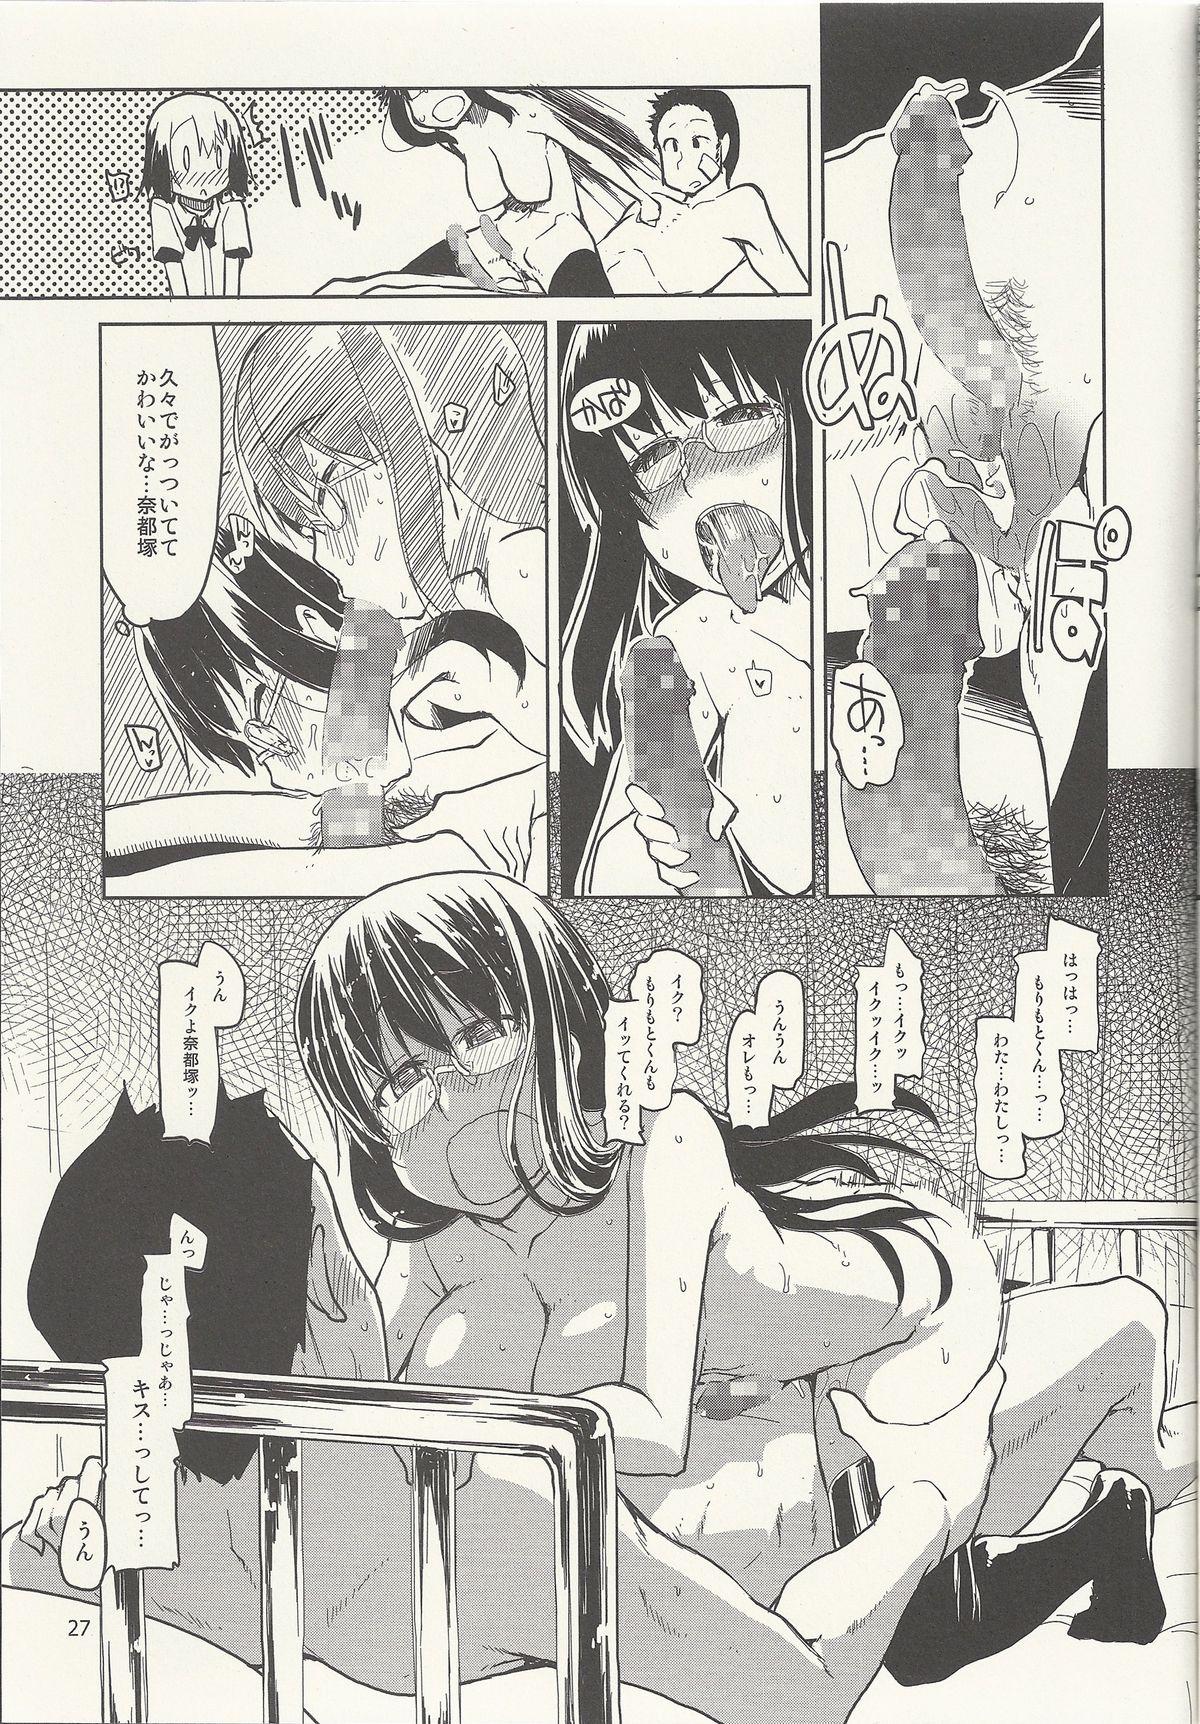 Natsuzuka-san no Himitsu. Vol. 6 Kanketsu Hen 27